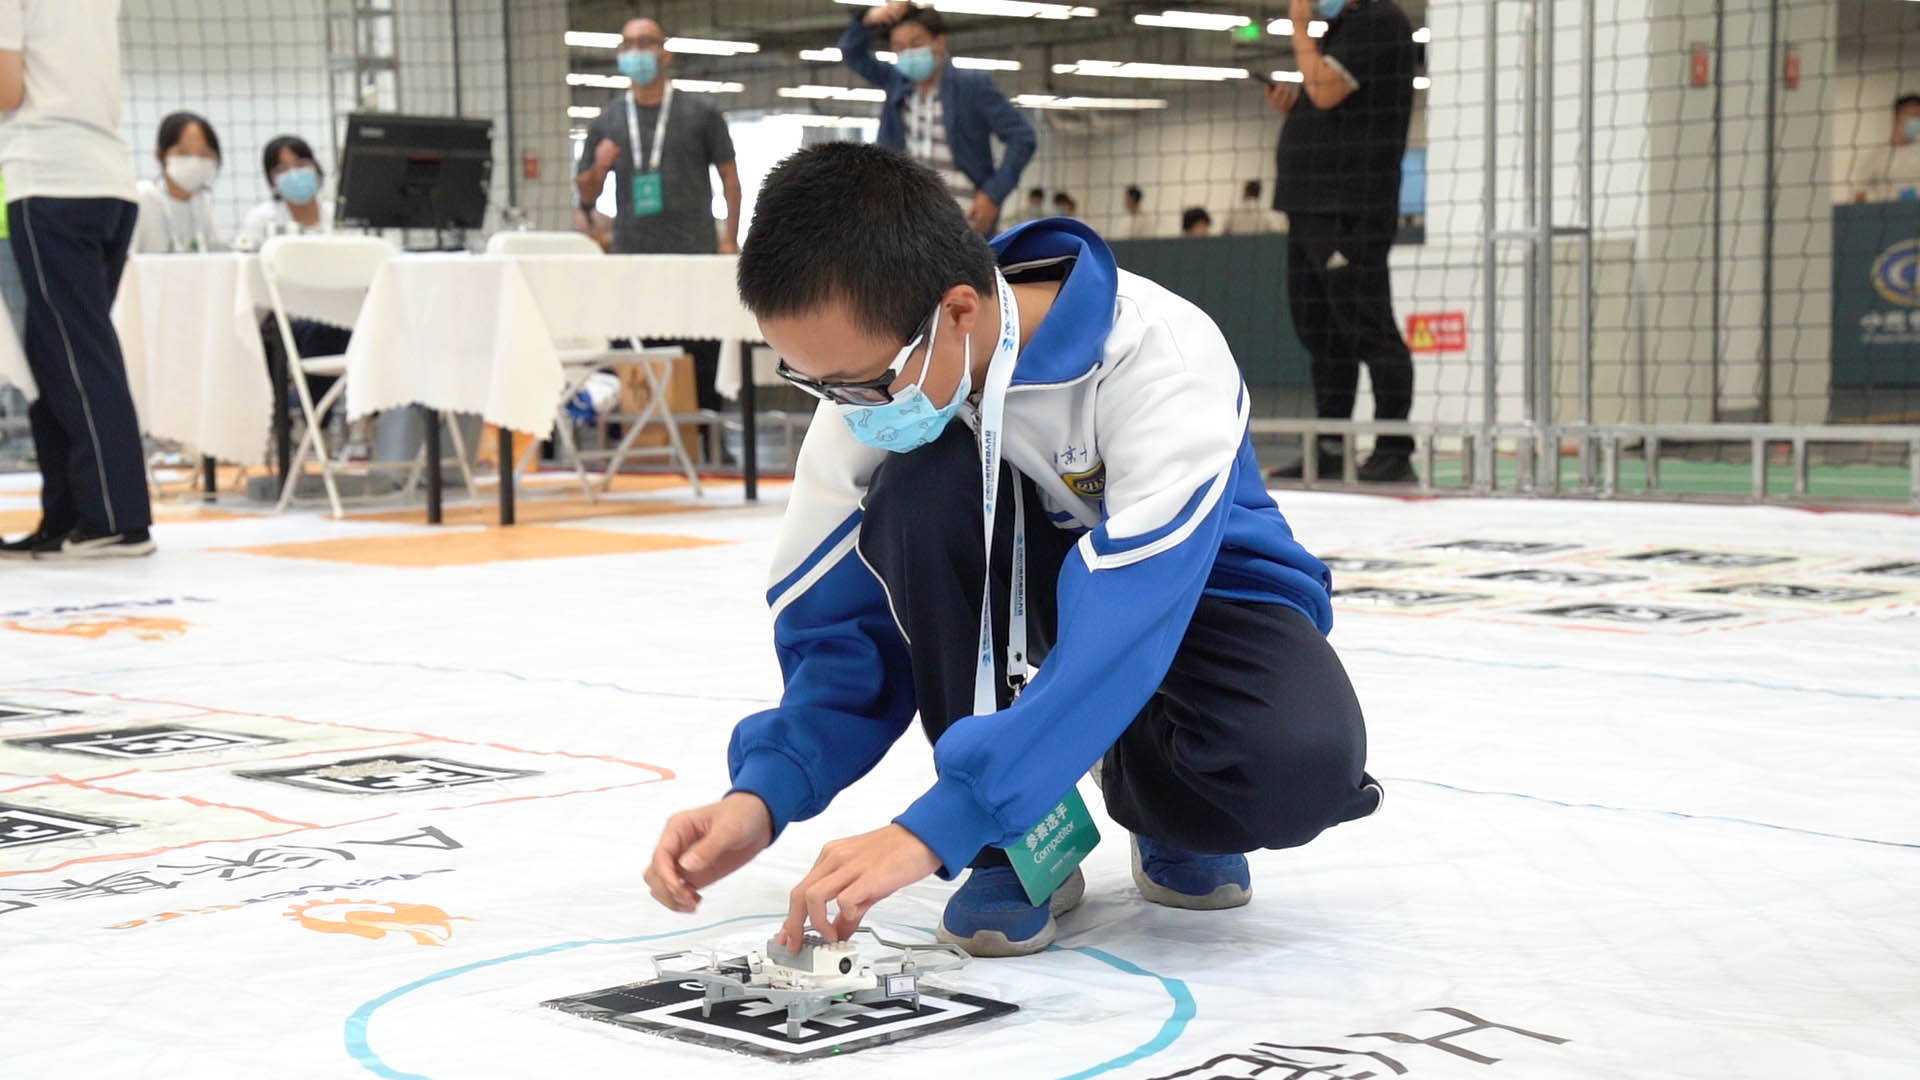 创客火无人机助力2021世界机器人大赛顺利举行,poYBAGFBuQ2AY7nwAANGHbr541g521.png,第9张